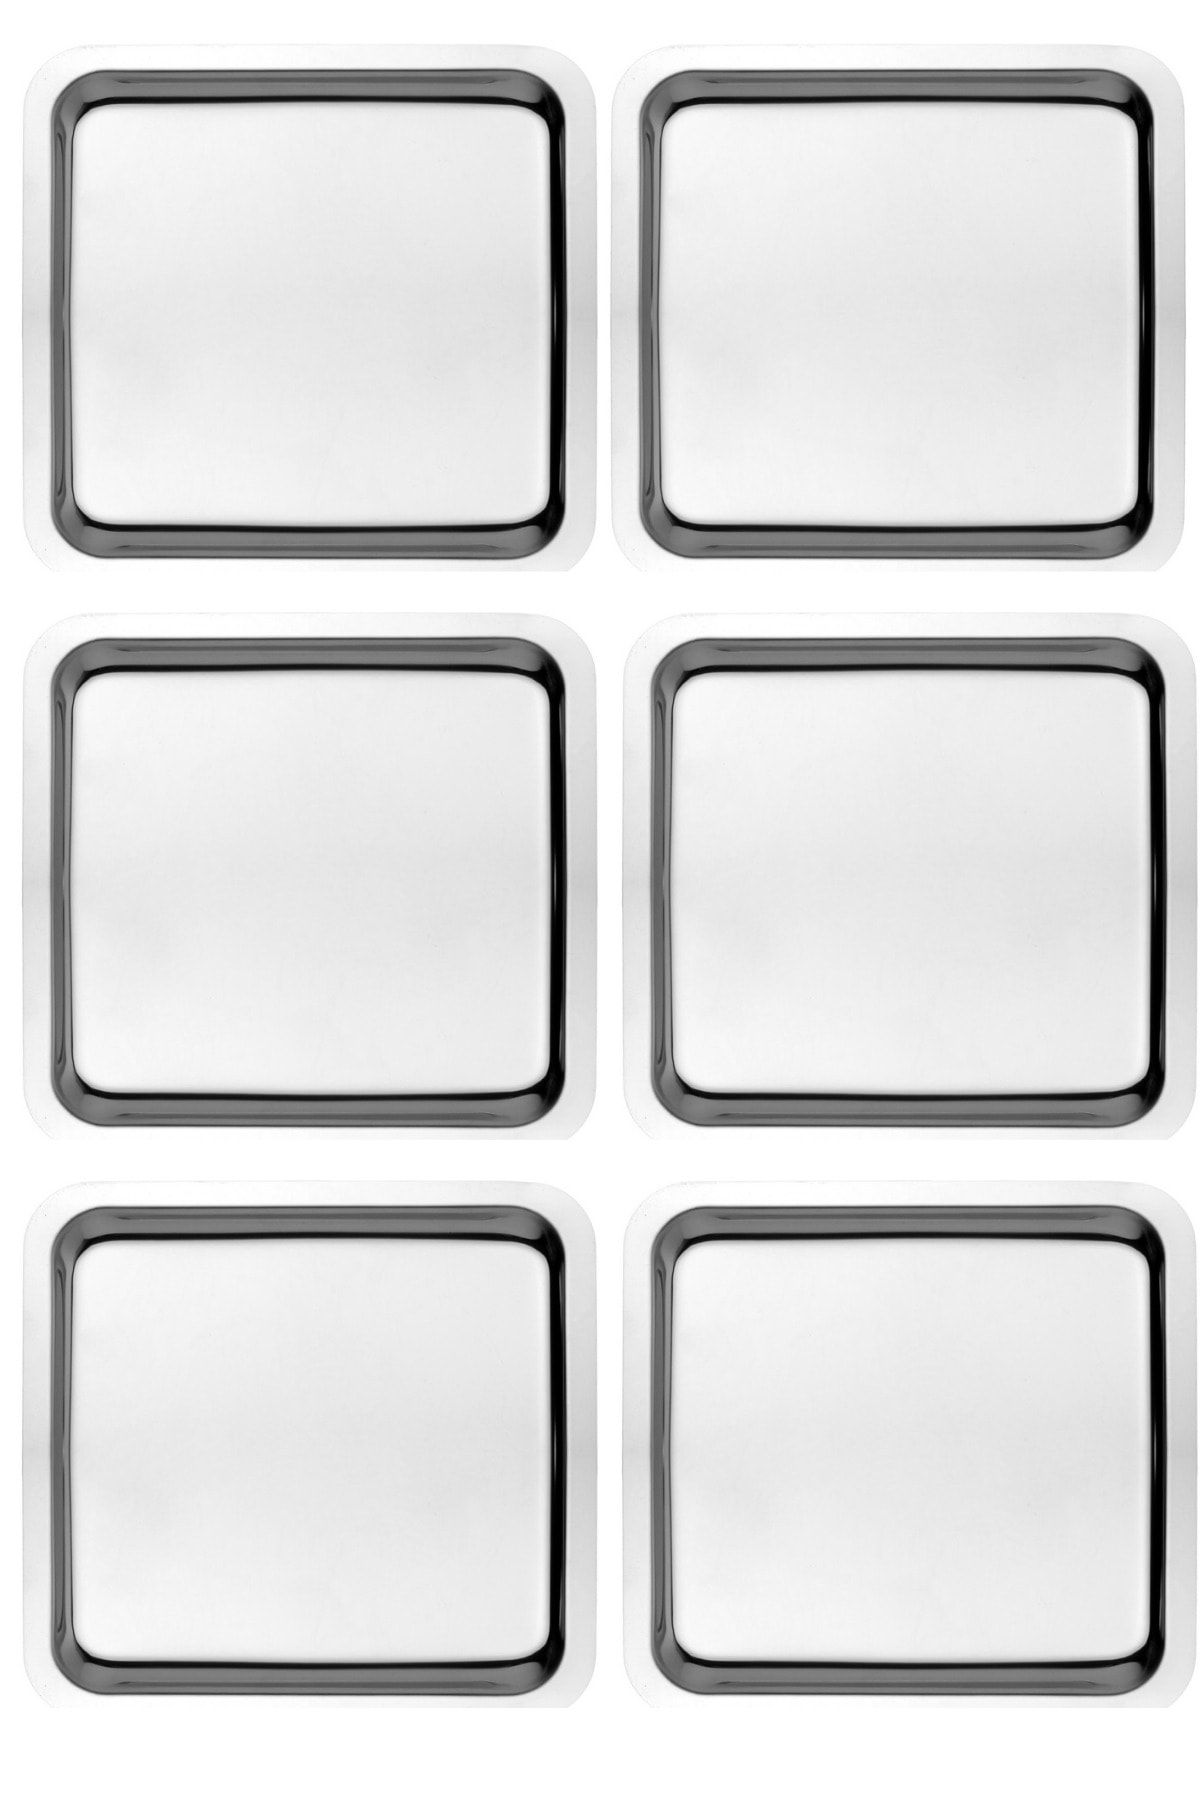 Kitchen Design Lab 6 Adet Paslanmaz Çelik Gümüş Renk Sunum Tepsisi 21 X21 Cm Çay Kahve Pasta Tatlı Servis Sunum Tepsisi